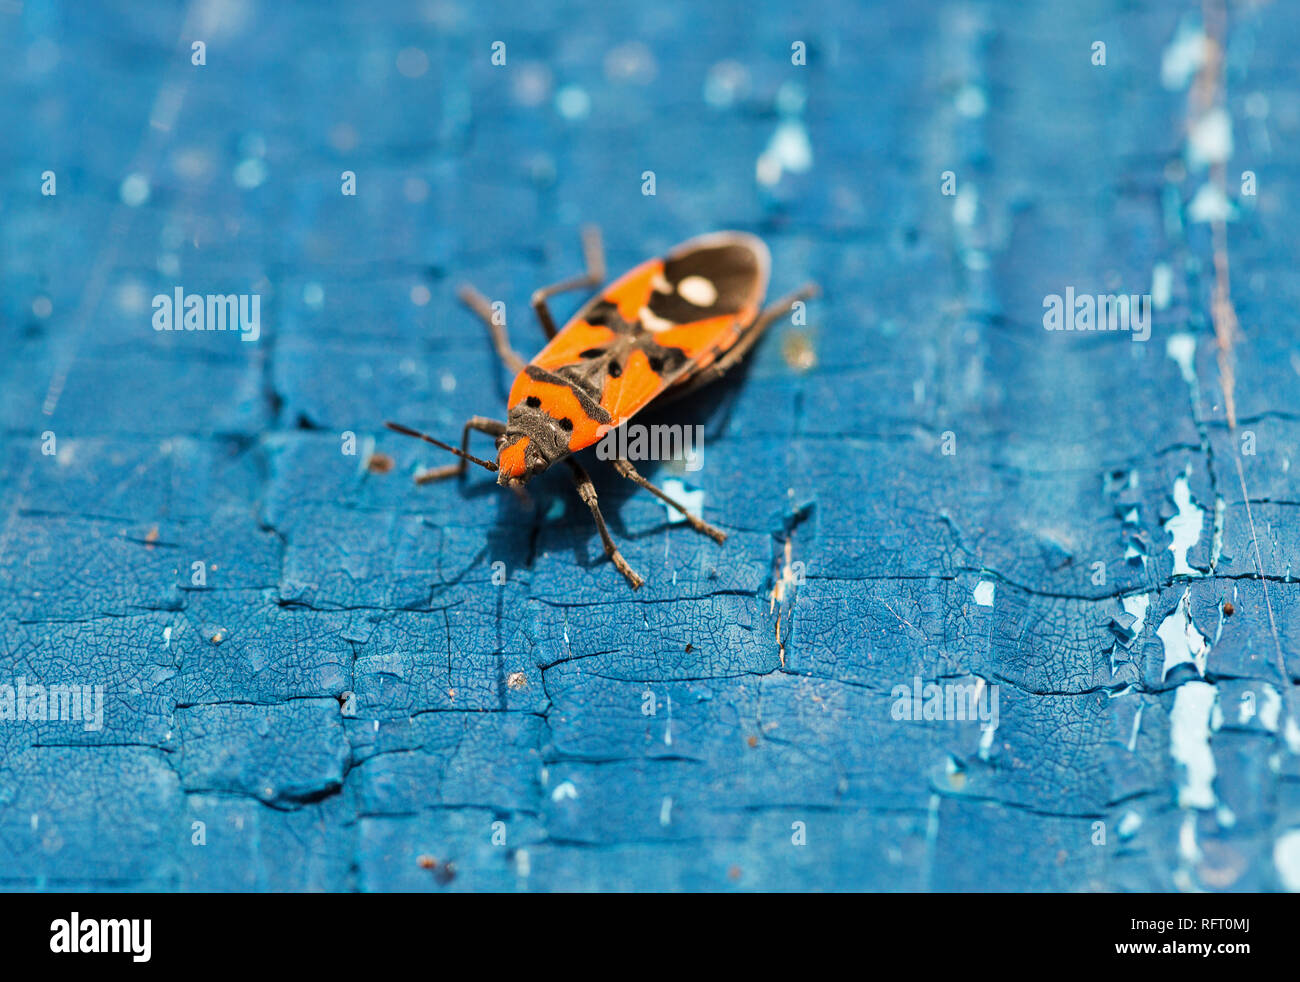 Käfer orange-blau